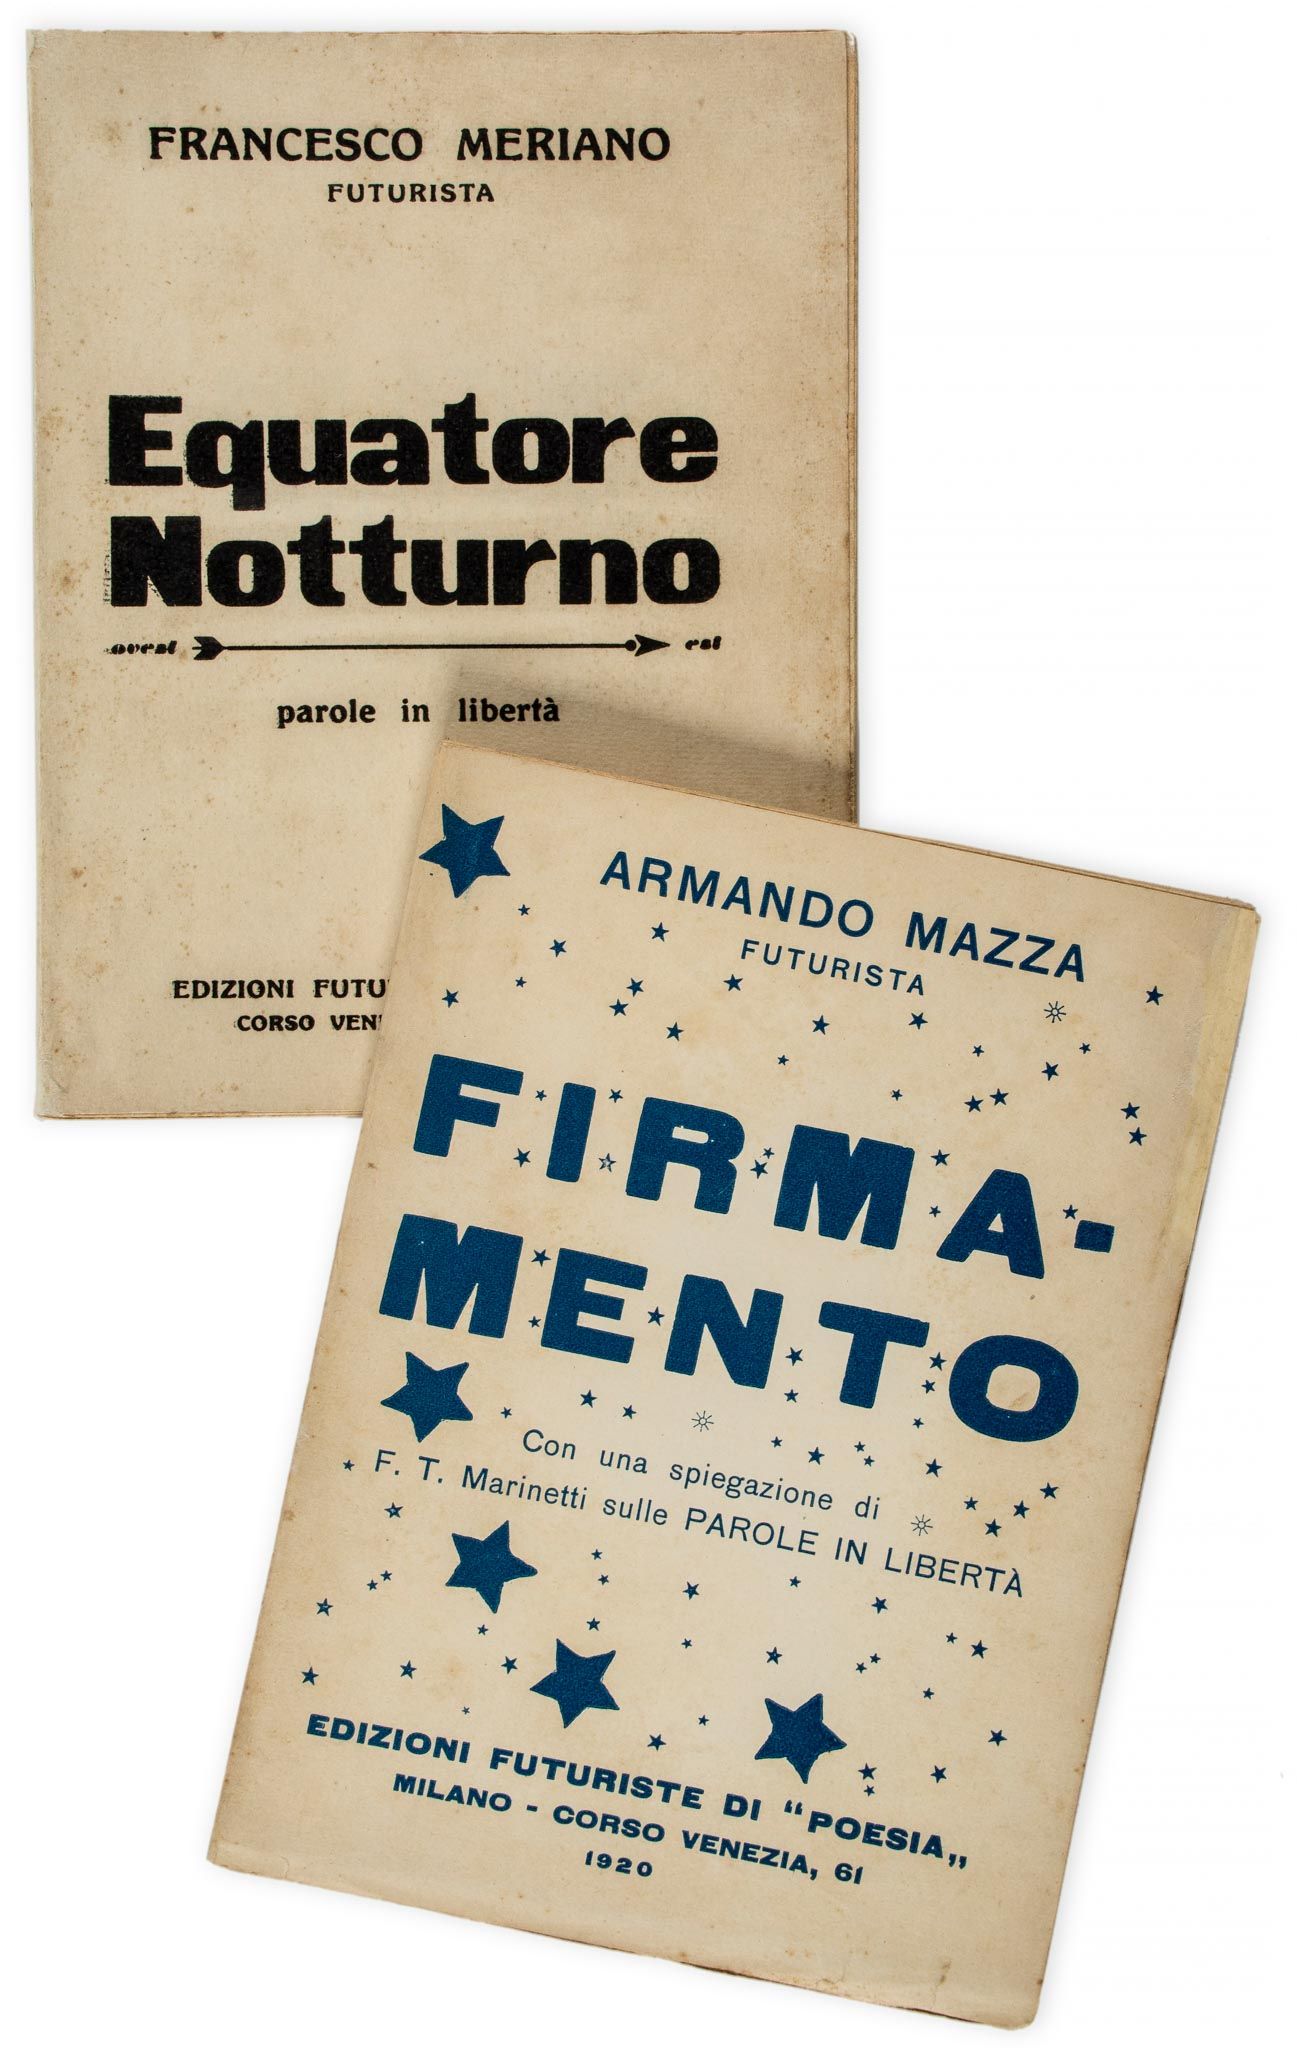 Meriano (Francesco) - Equatore Notturno, parole in Libertà, 1916 § Mazza (Armando) Firmamento, con